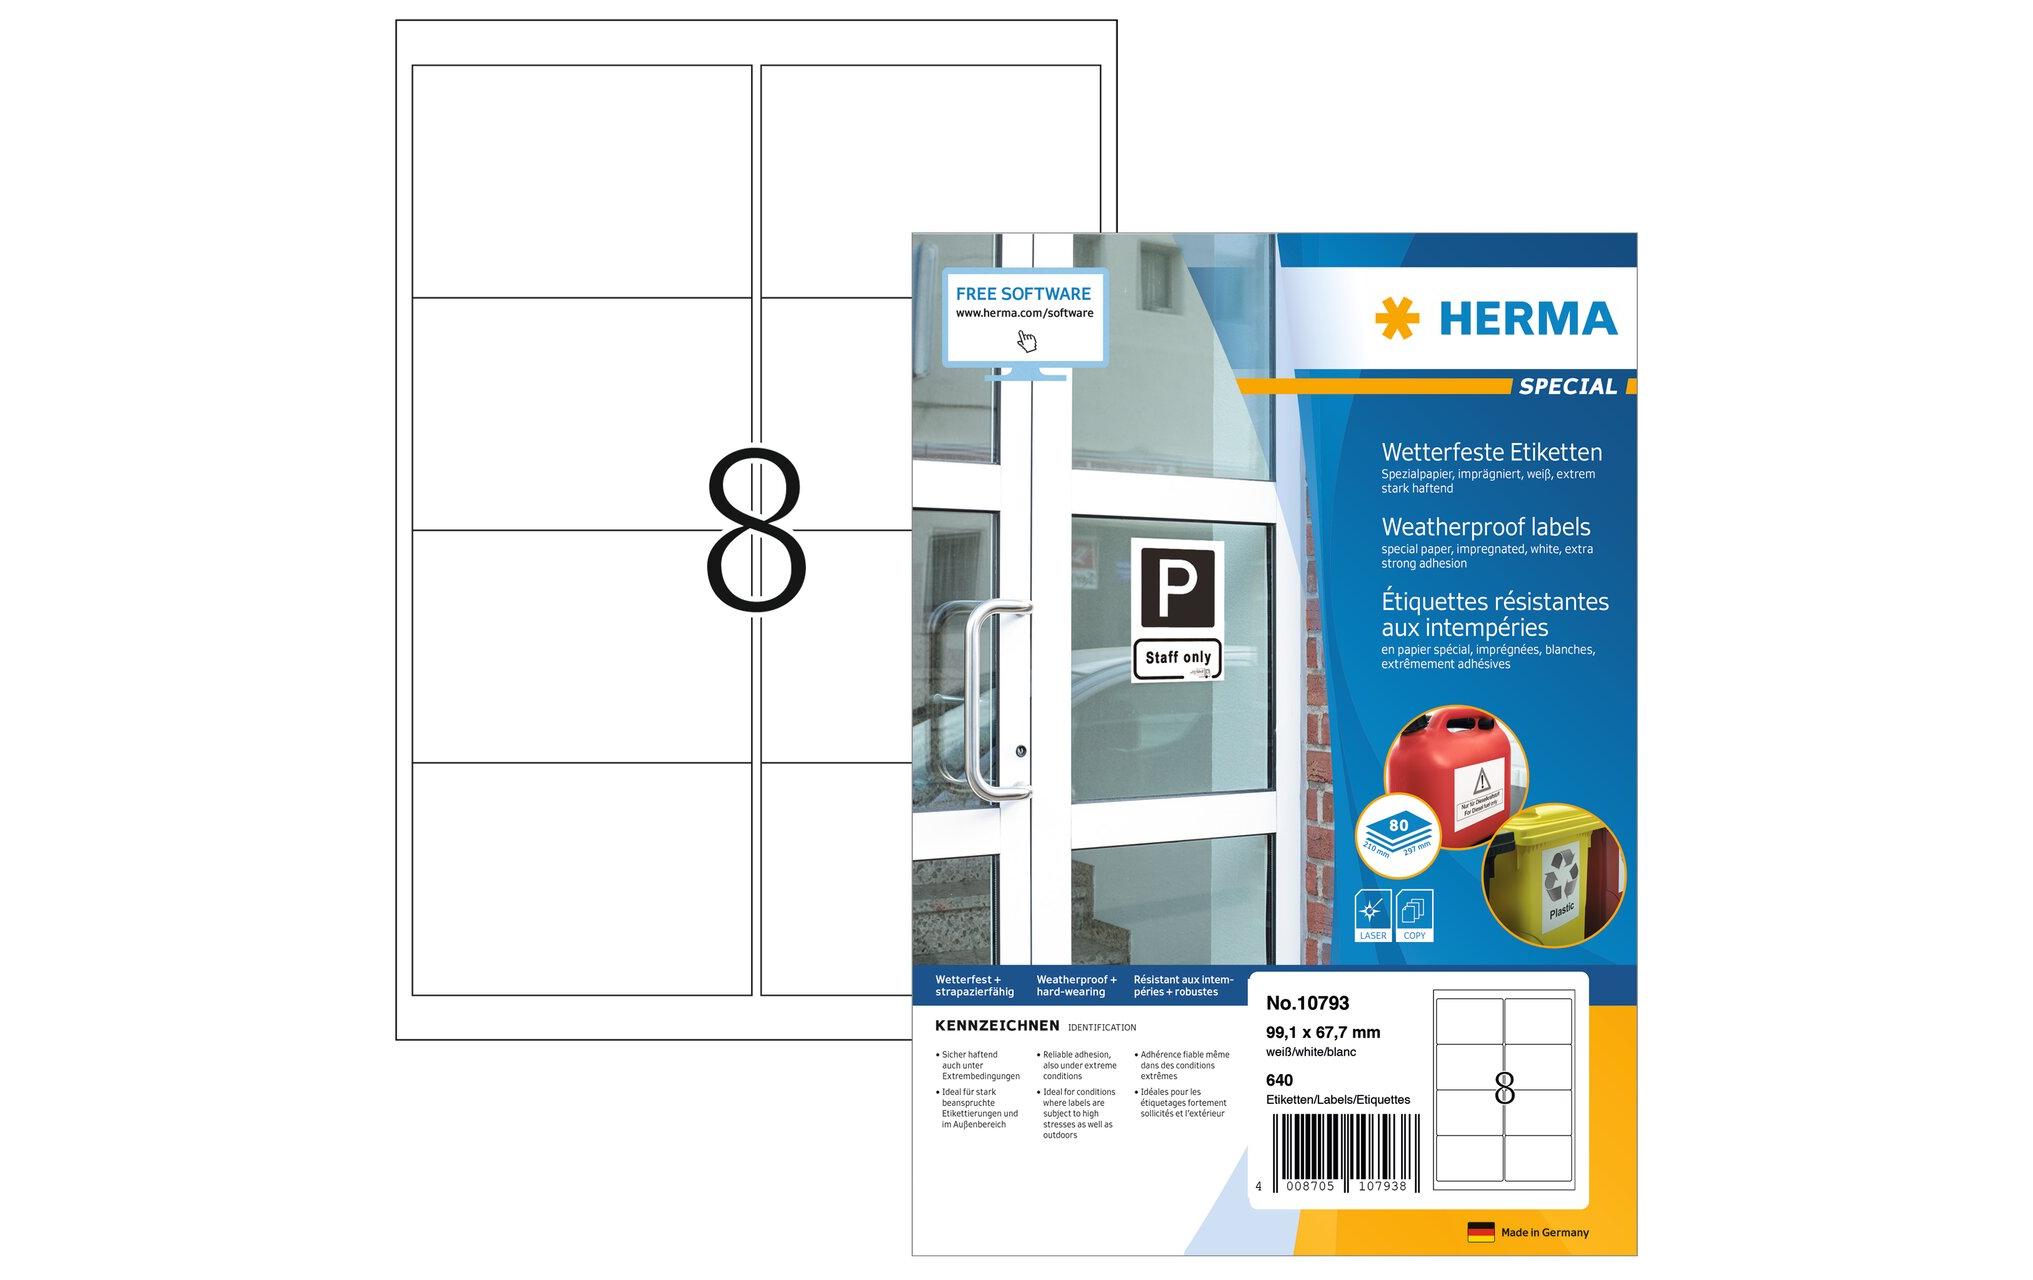 HERMA Outdoor-Etiketten 99.1 x 67.7 mm, 80 Blatt